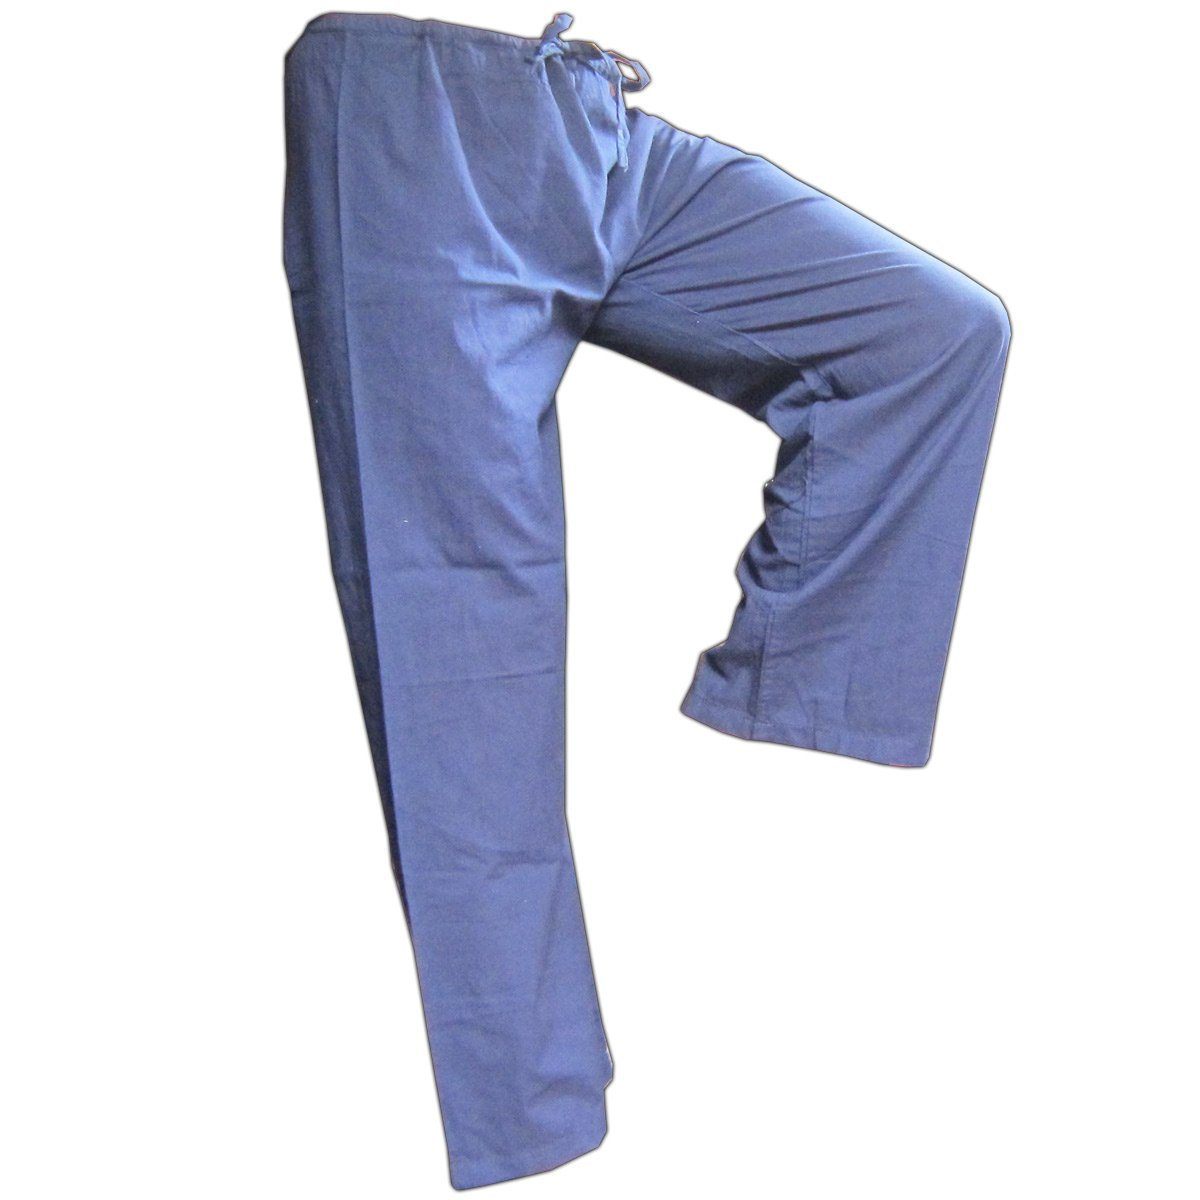 PANASIAM Wellnesshose Bequeme Unisex Stoffhose aus feiner Baumwolle für Damen und Herren Freizeithose mit Taschen Relaxhose in großer Farbauswahl Blau